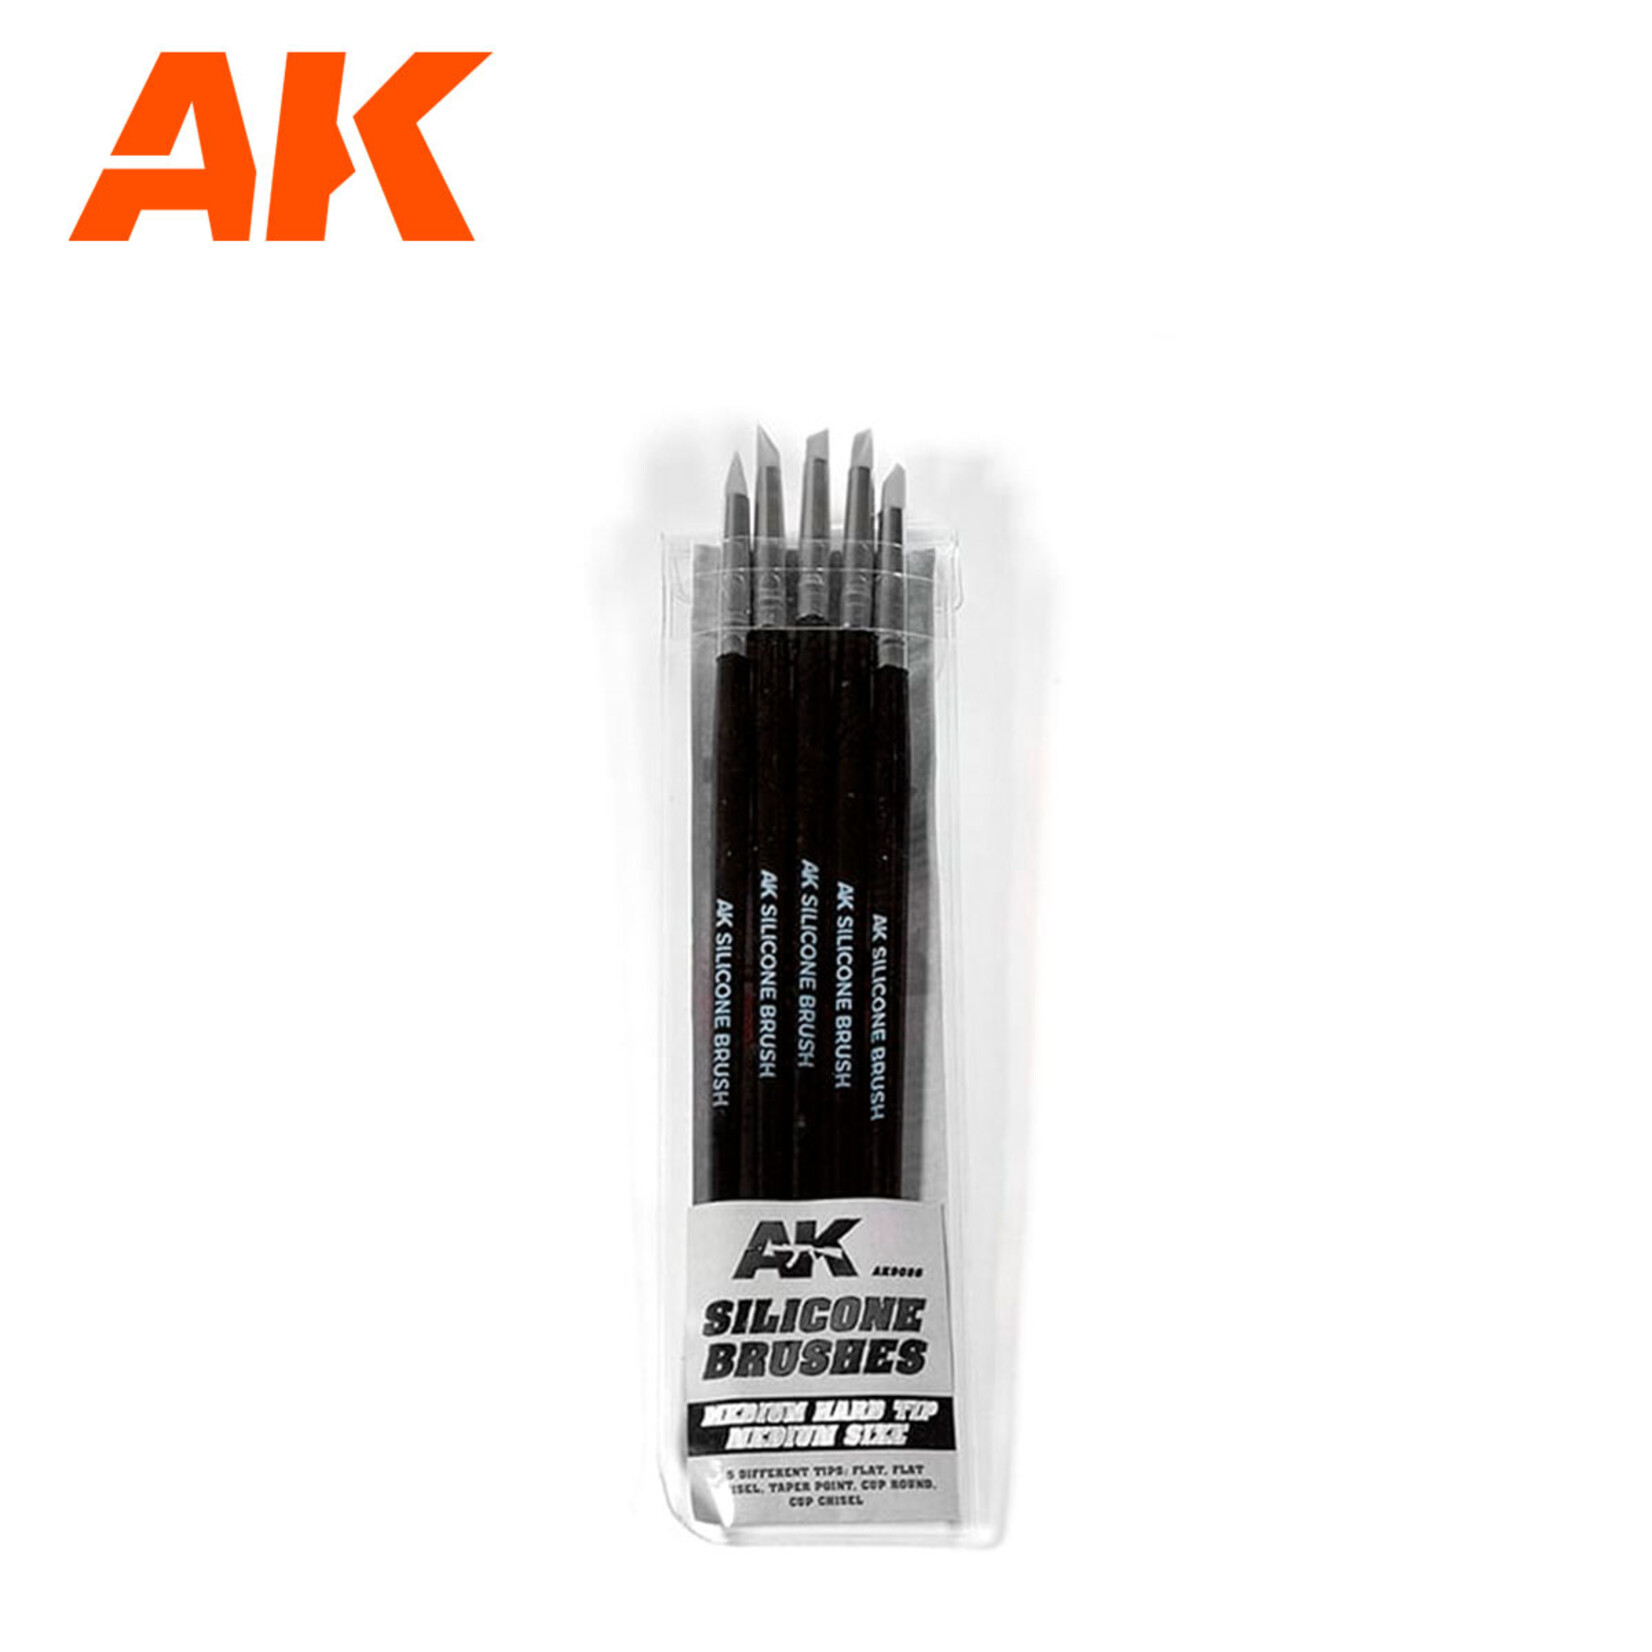 AK Interactive AK Silicone Brushes Medium Tip Medium Size